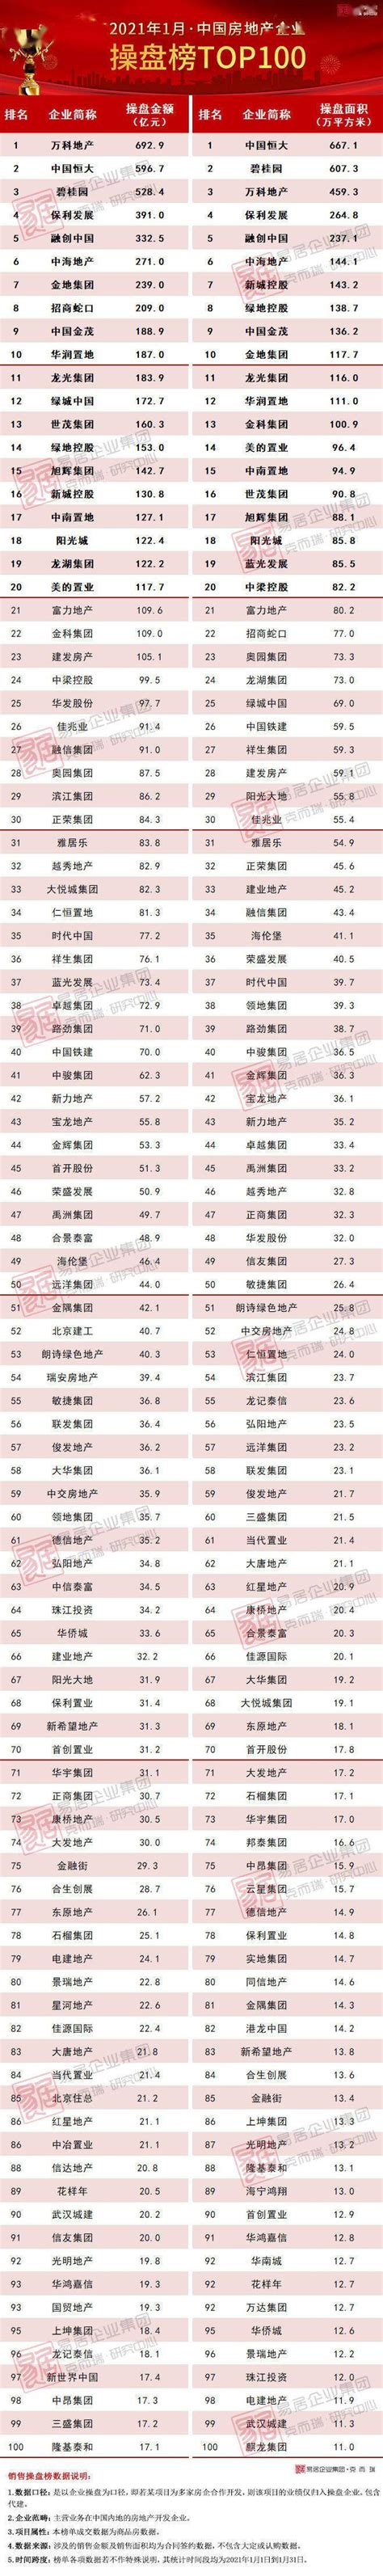 2021年1月中国房地产企业销售TOP100排行榜_成交